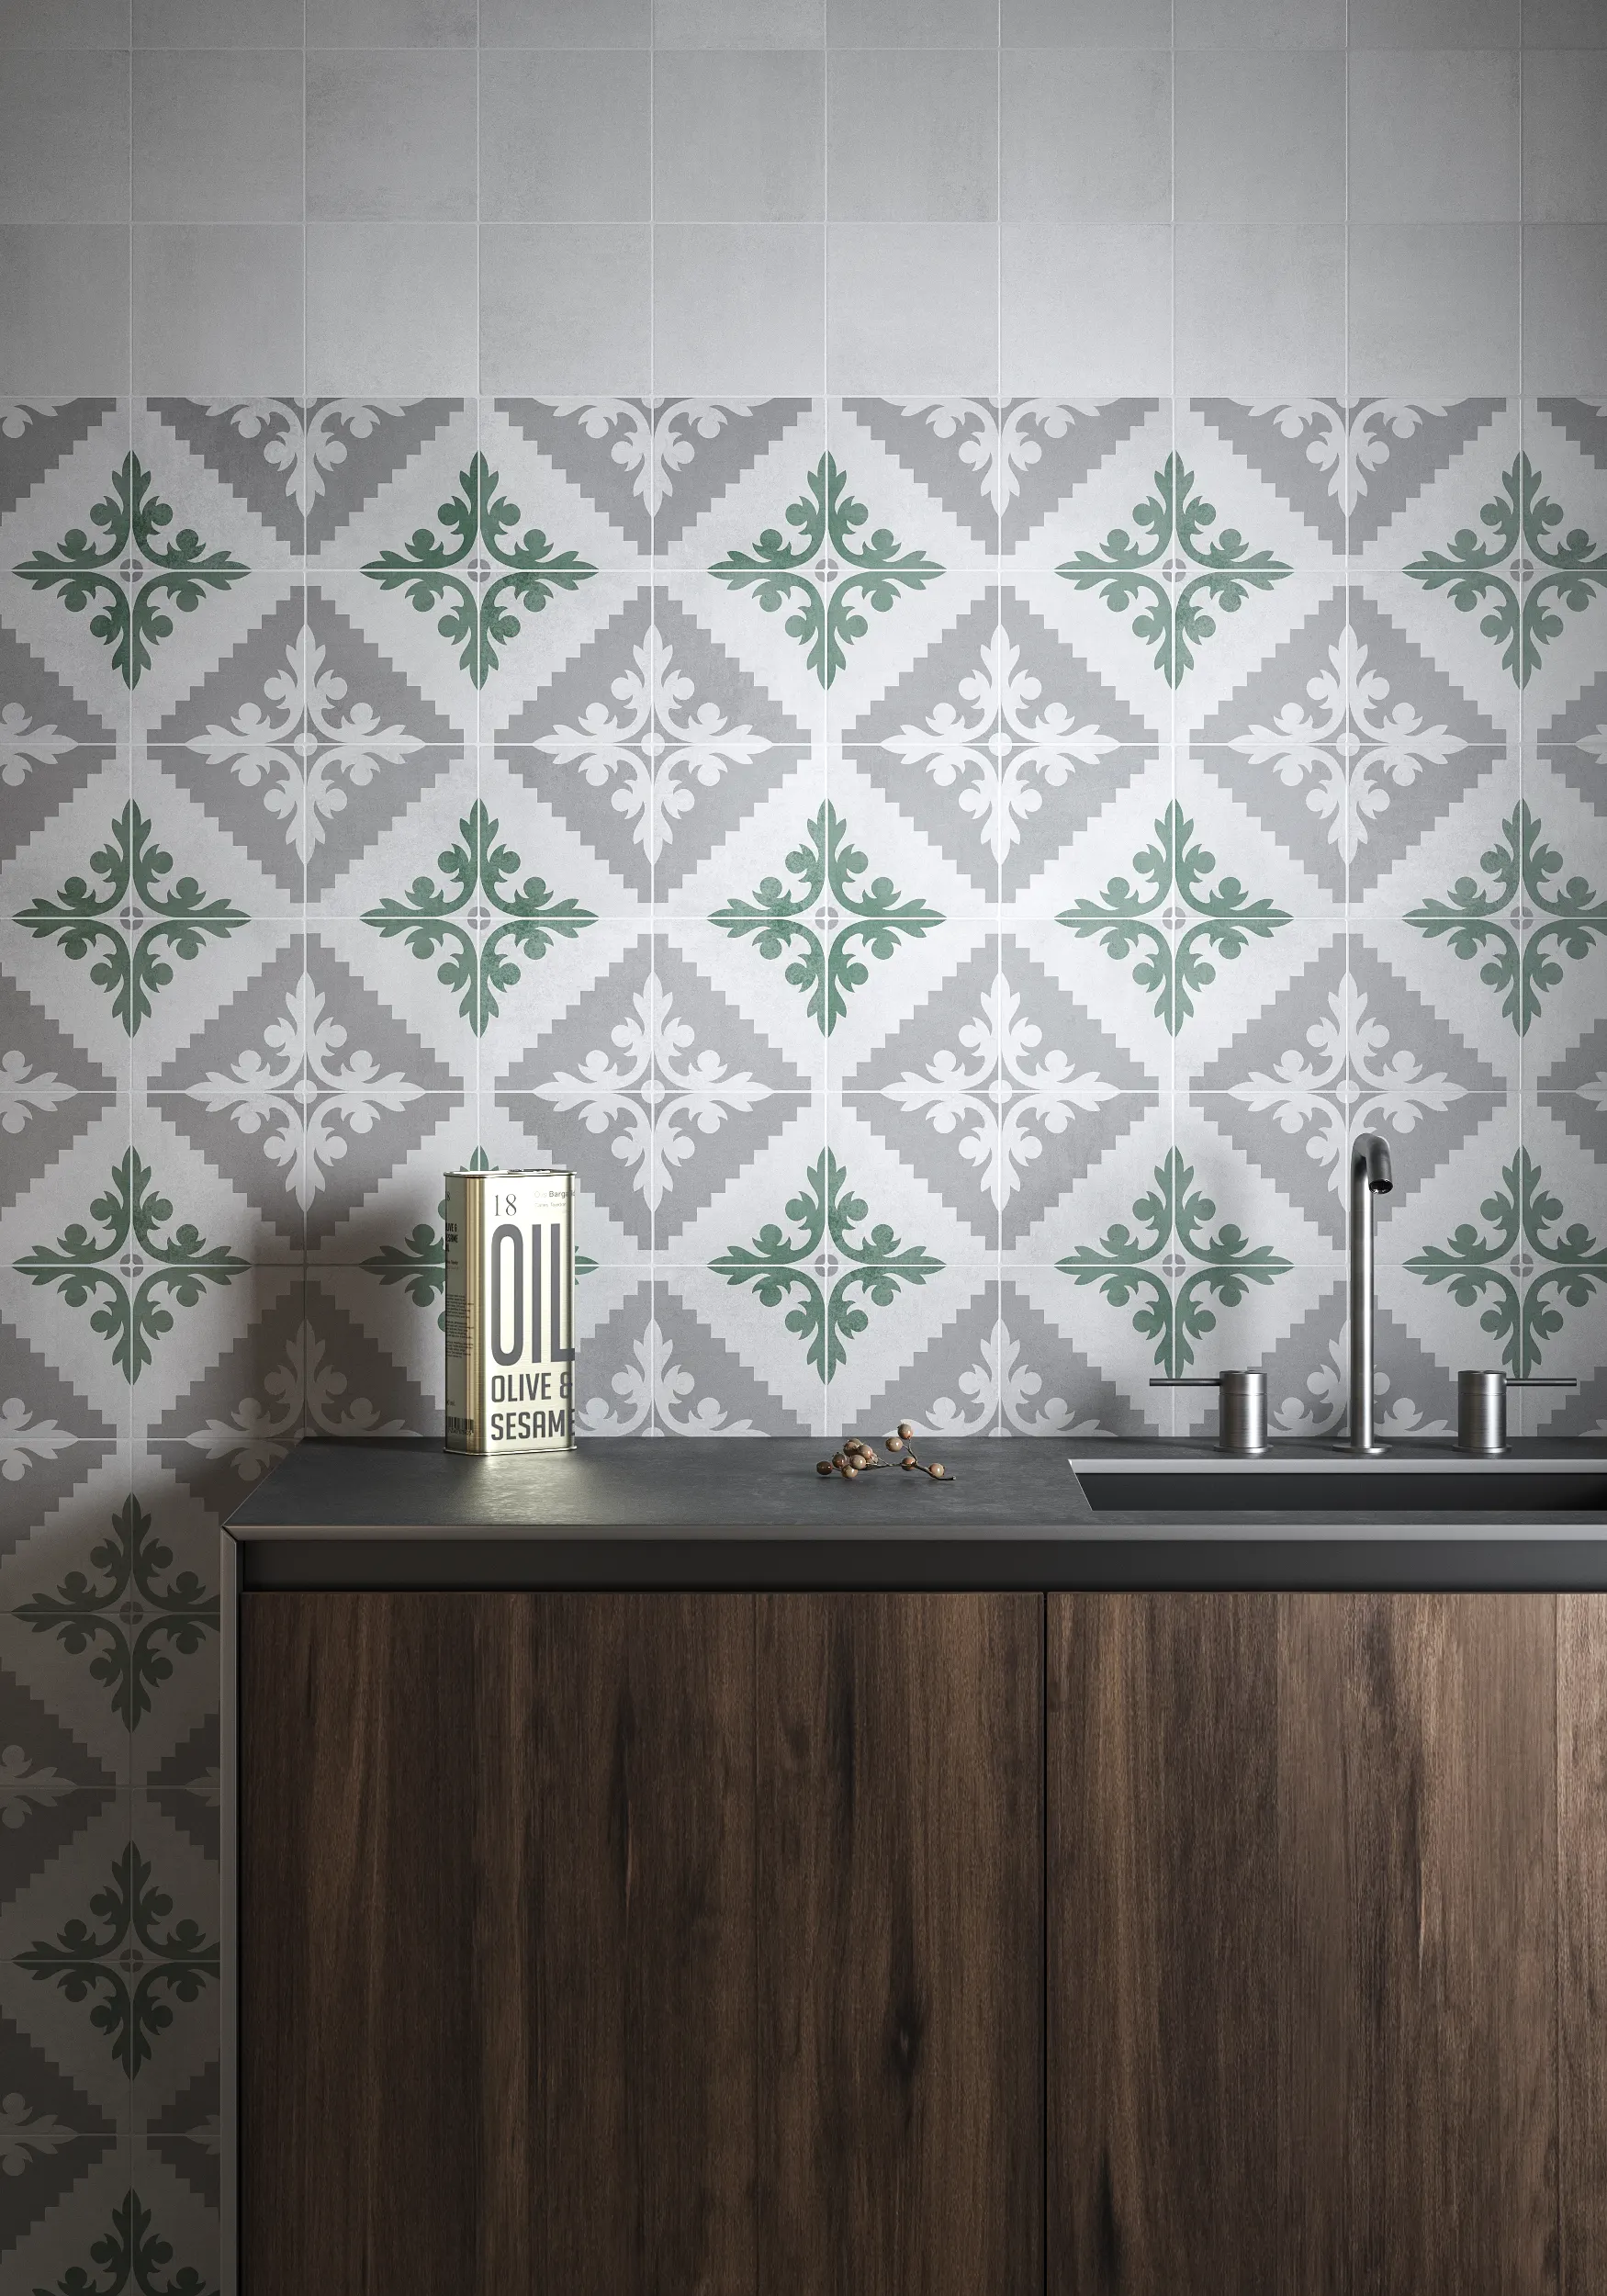 Pared de cocina con azulejos decorativos verdes en 15x15 cm